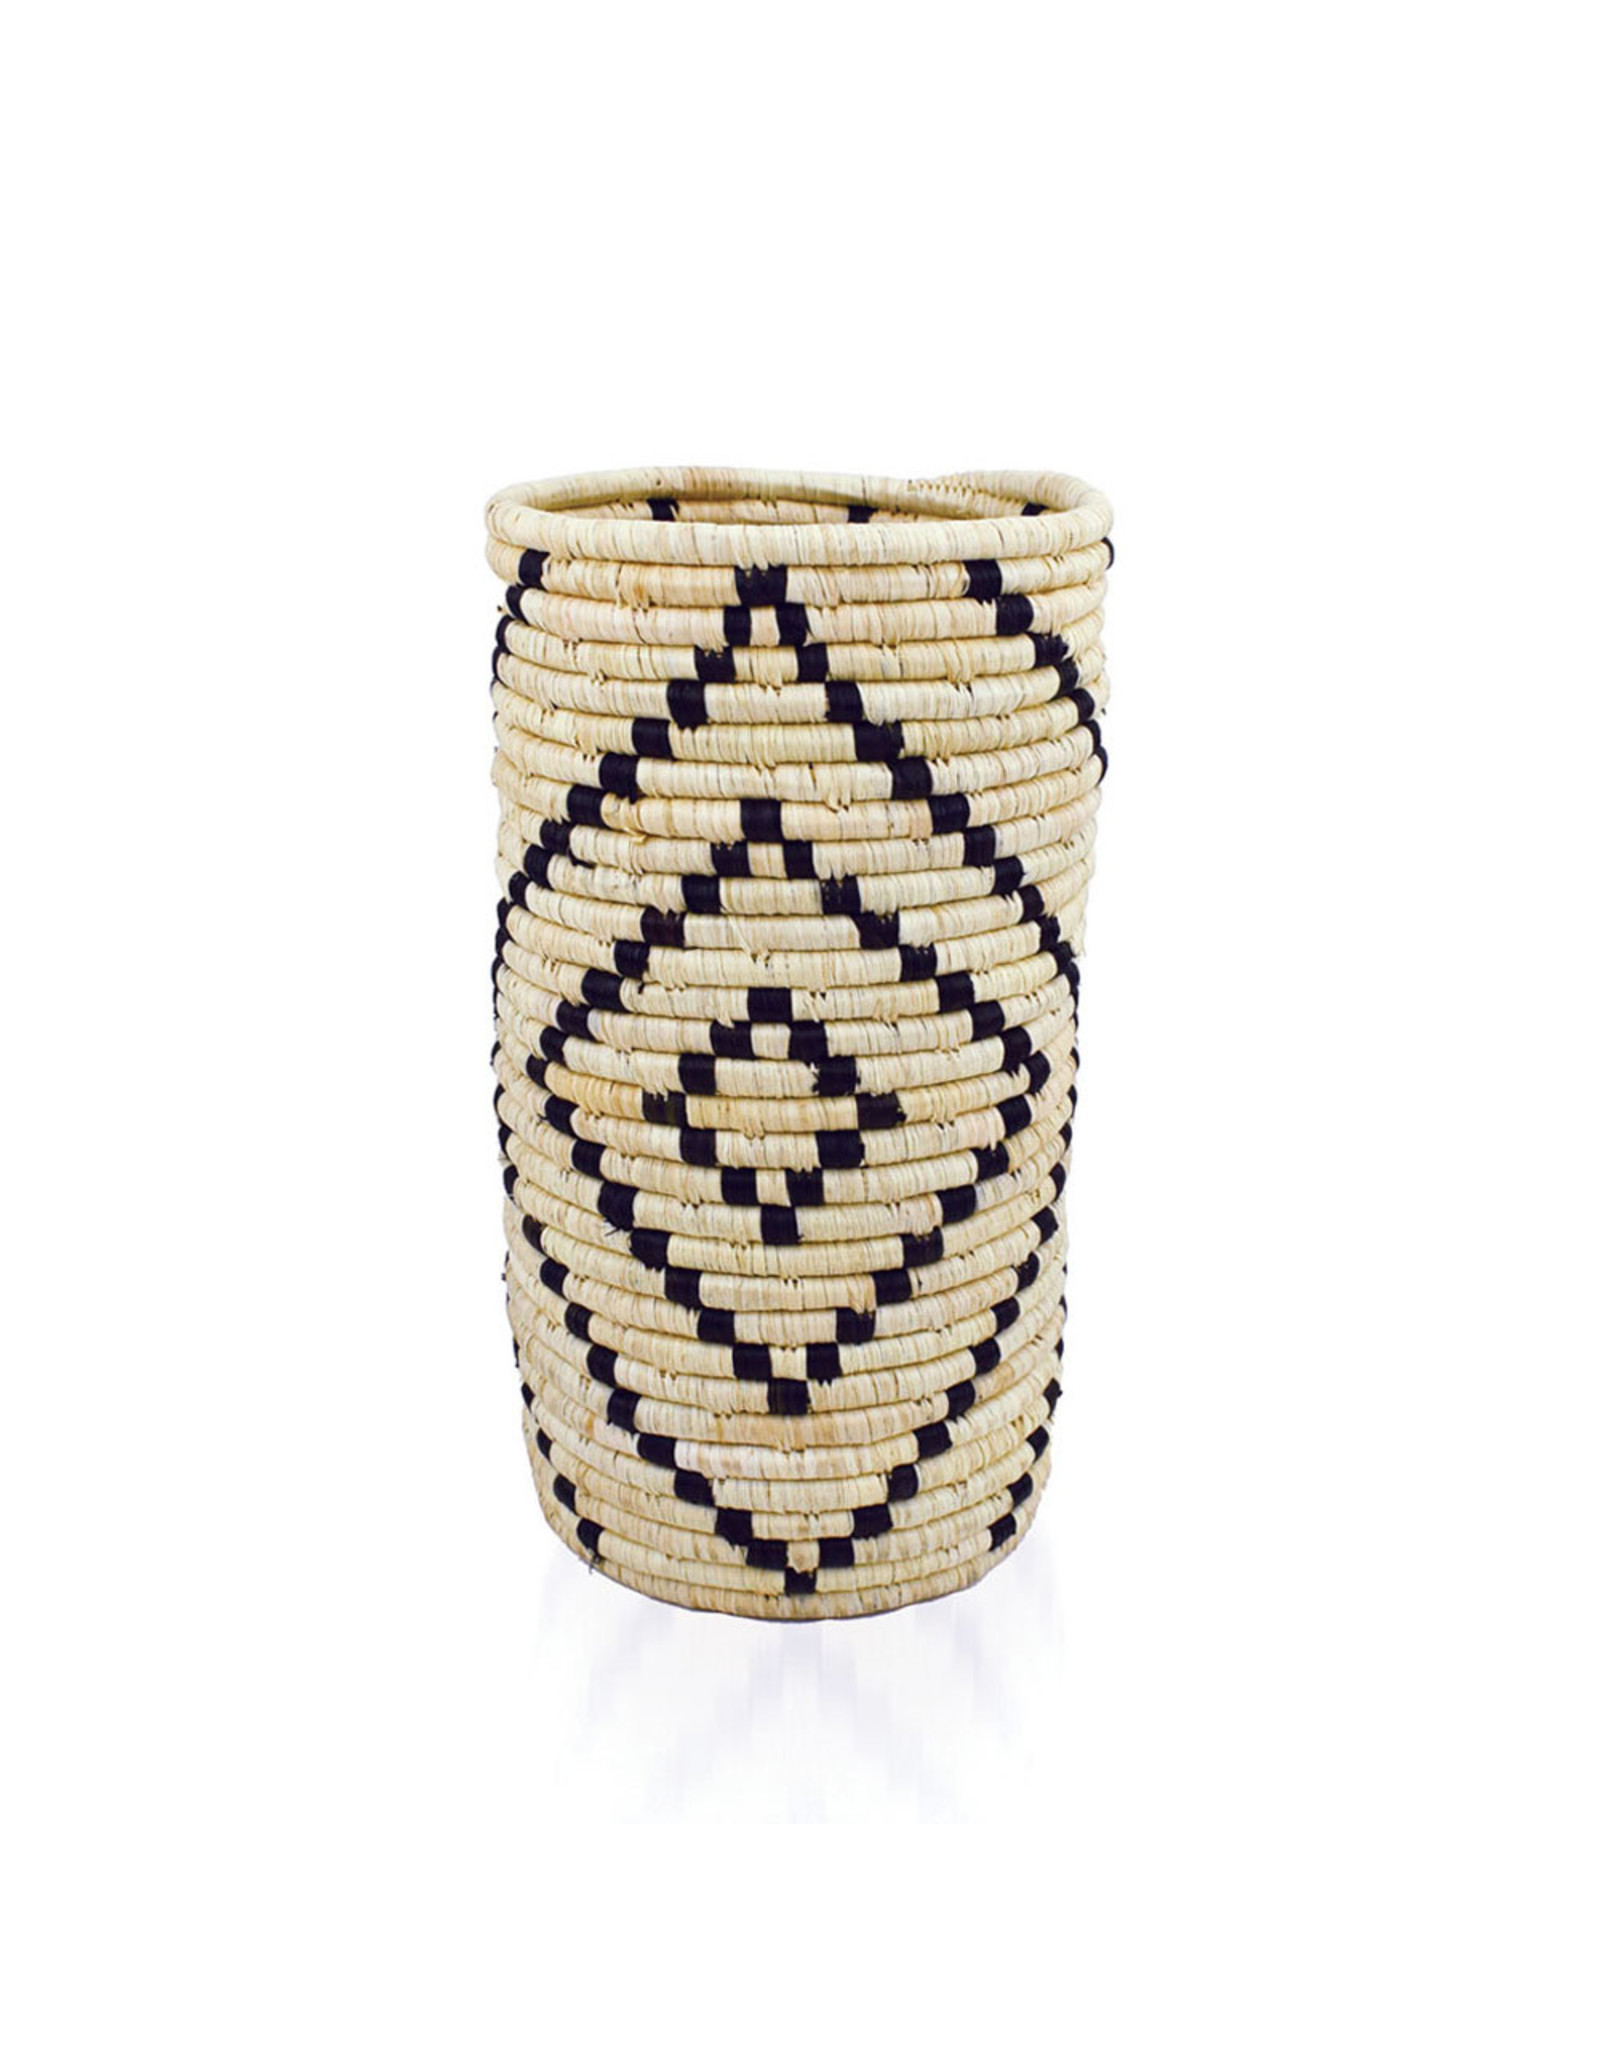 Matope Raffia Vase w/ Glass Sleeve, Uganda